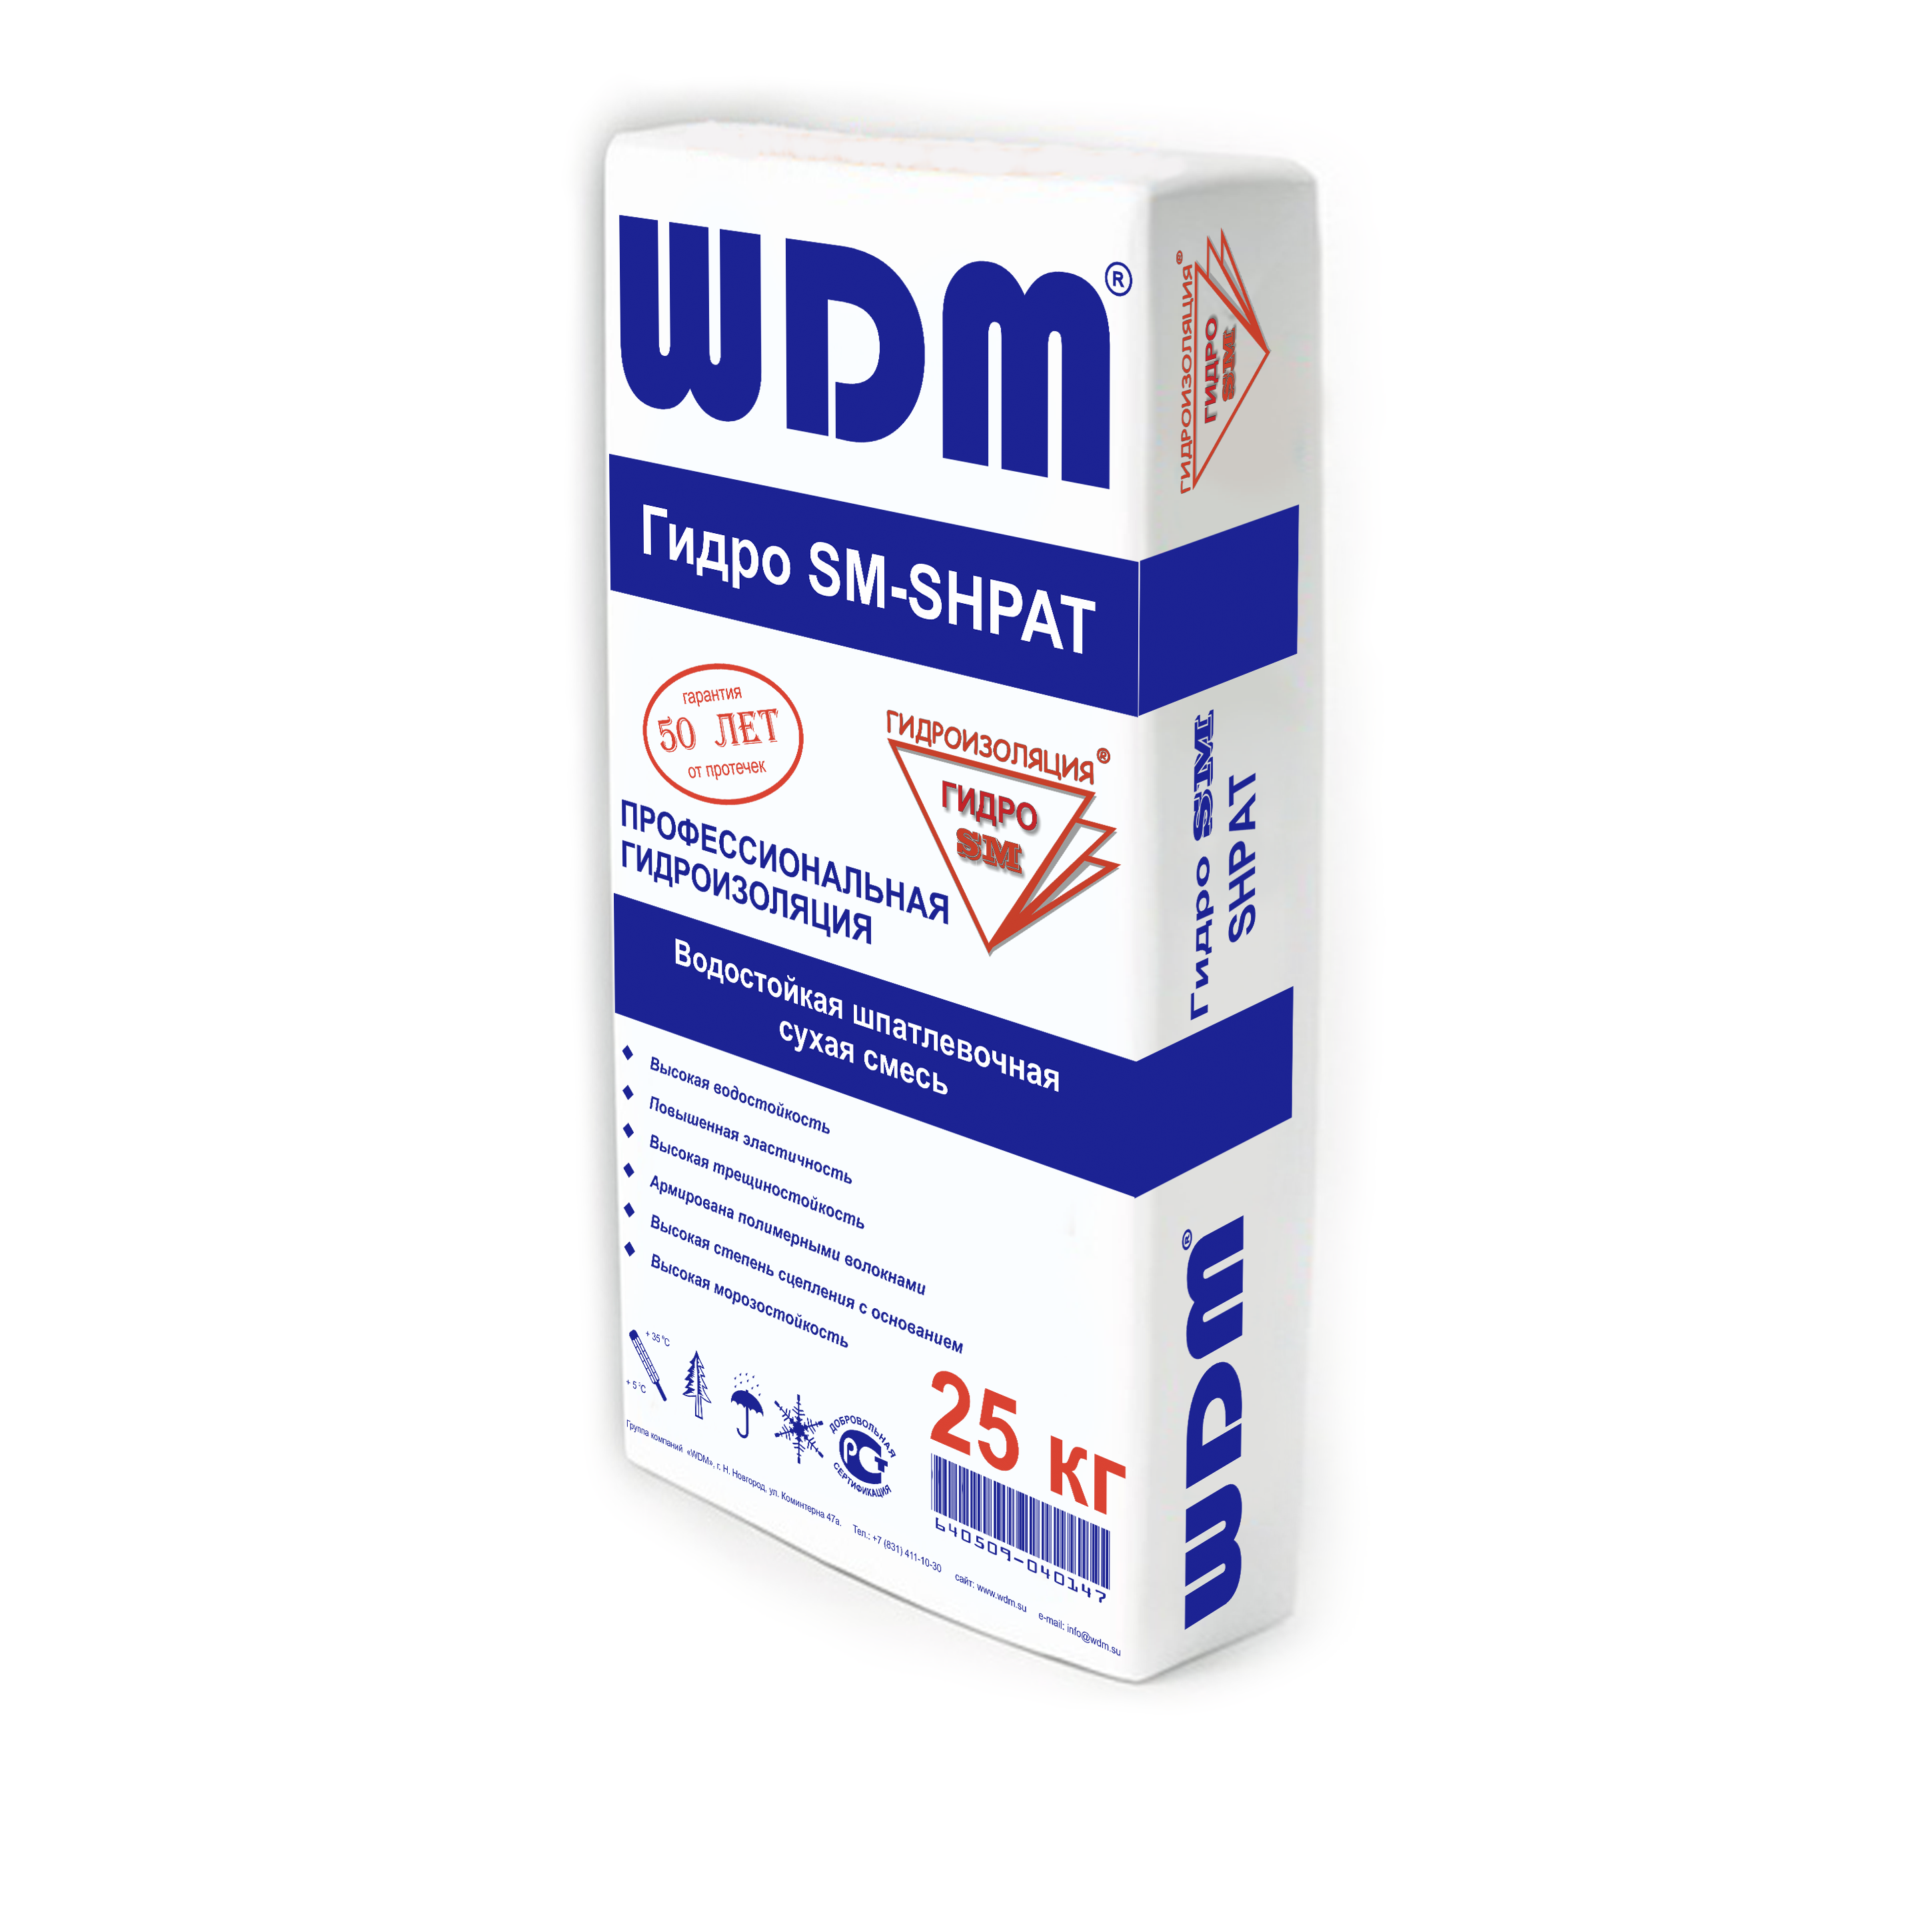 Шпатлевочная сухая смесь WDM Гидро SM-SHPAT 25 кг